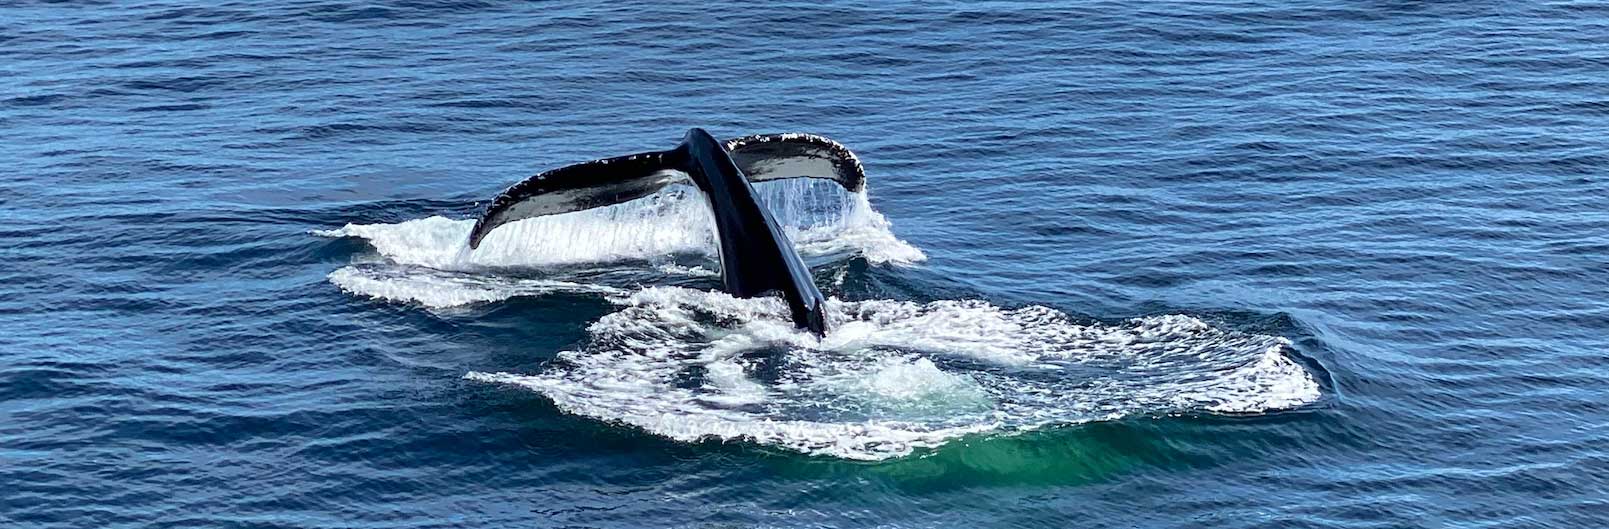 De staart van een walvis die onder water afdaalt. 